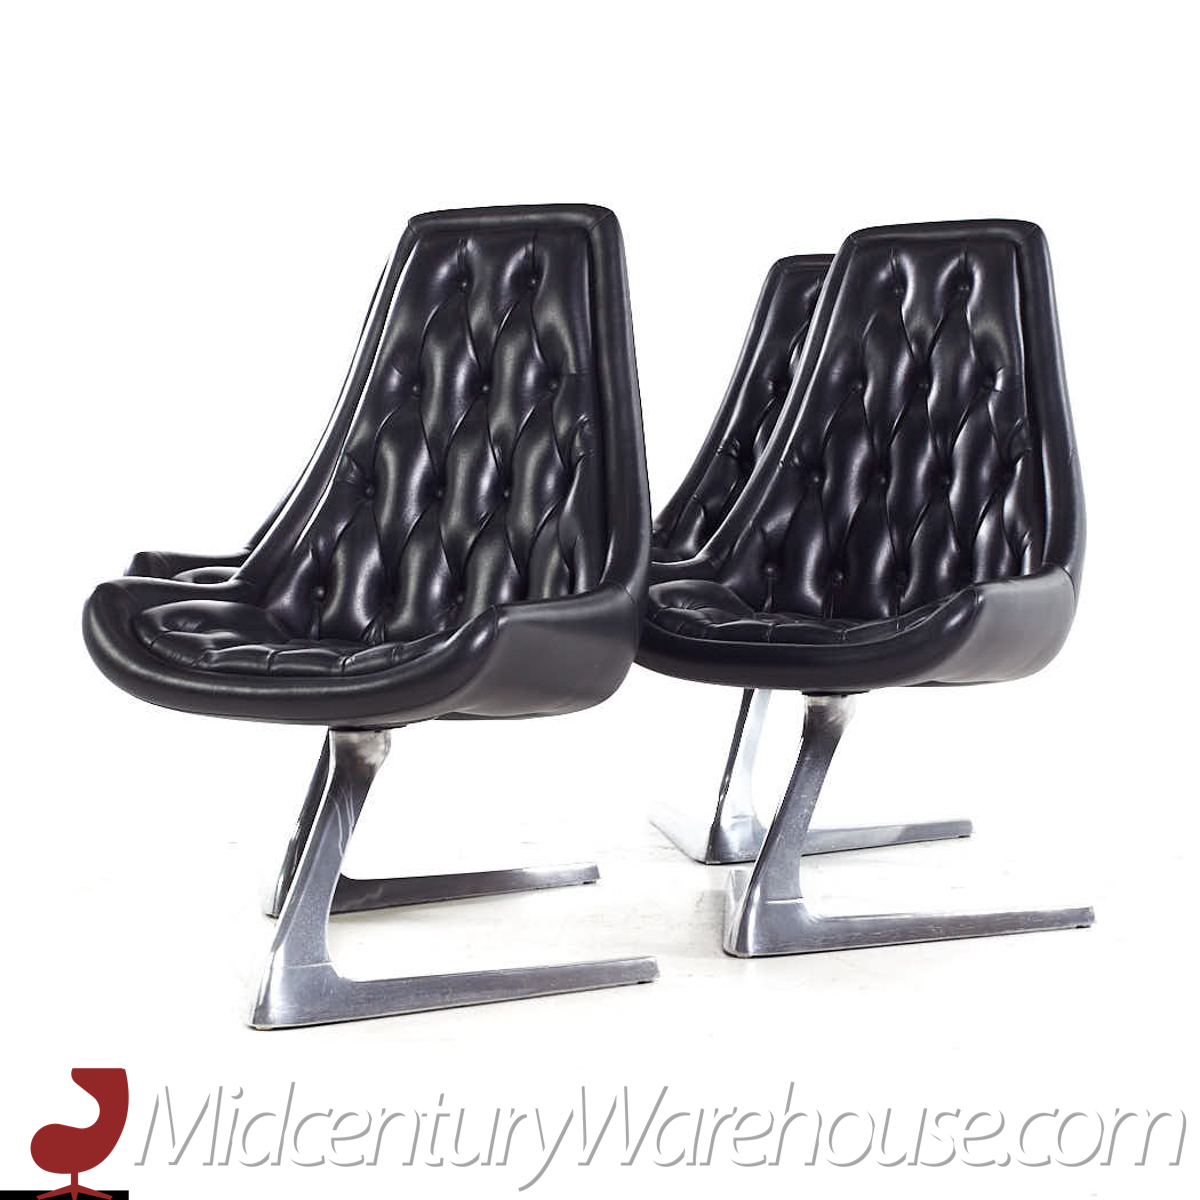 Chromcraft Star Trek Mid Century Chairs - Set of 6